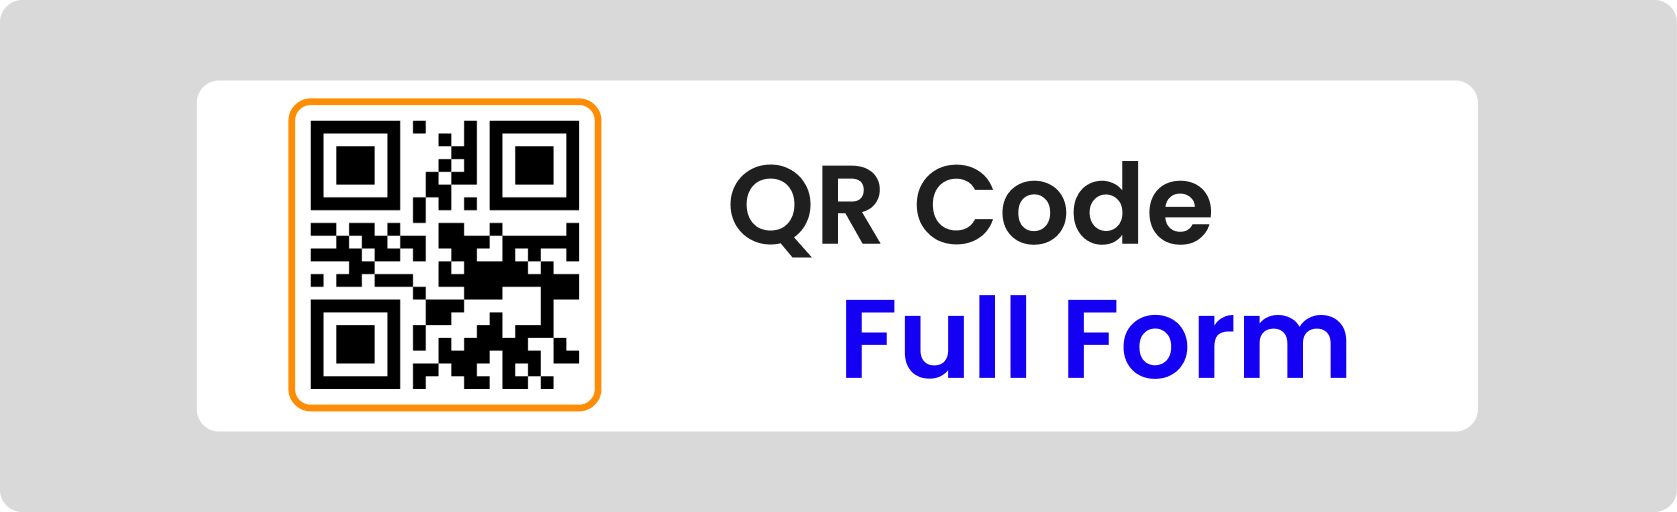 QR Code Full Form